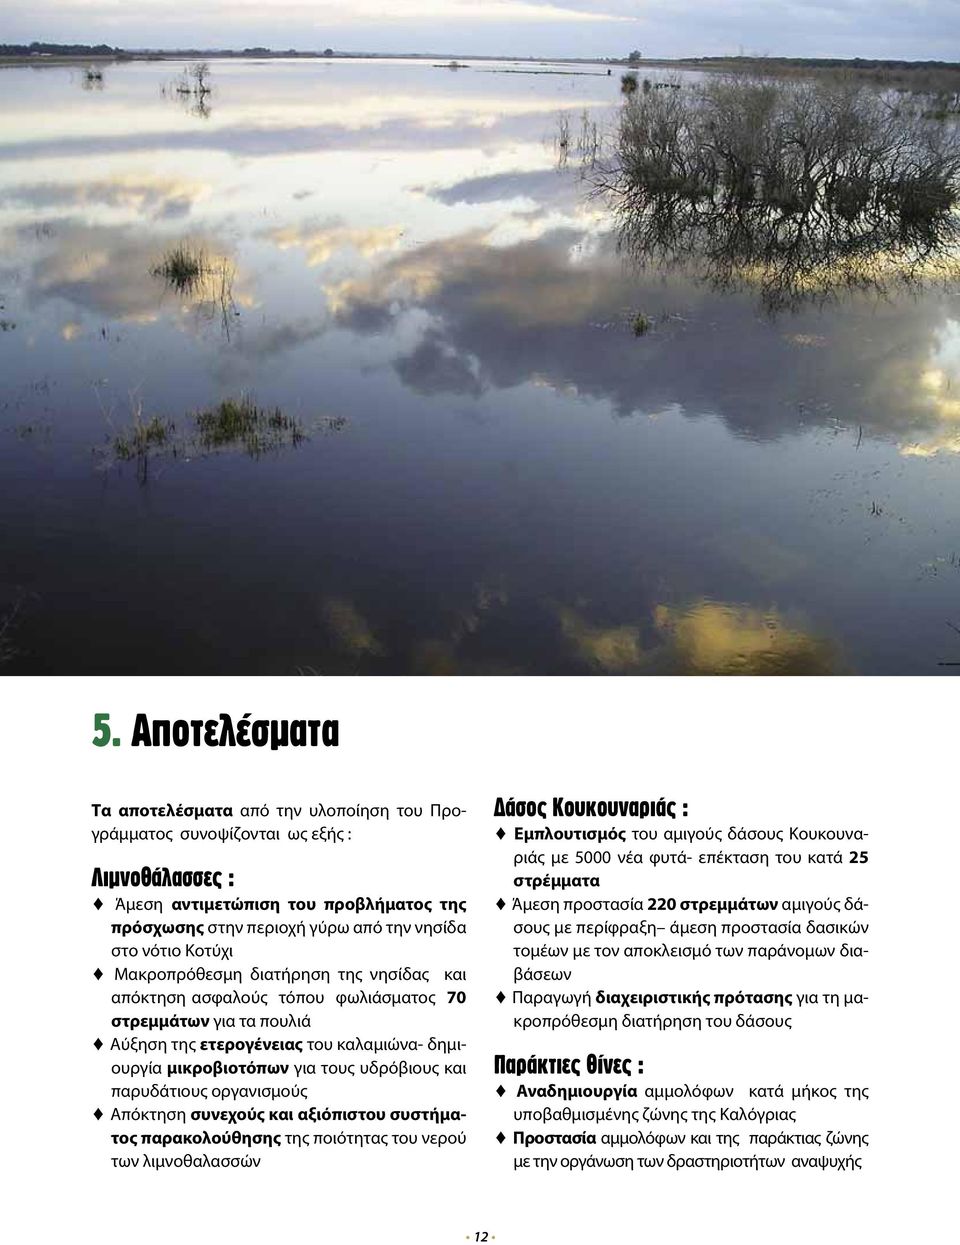 παρυδάτιους οργανισμούς Απόκτηση συνεχούς και αξιόπιστου συστήματος παρακολούθησης της ποιότητας του νερού των λιμνοθαλασσών Δάσος Κουκουναριάς : Εμπλουτισμός του αμιγούς δάσους Κουκουναριάς με 5000